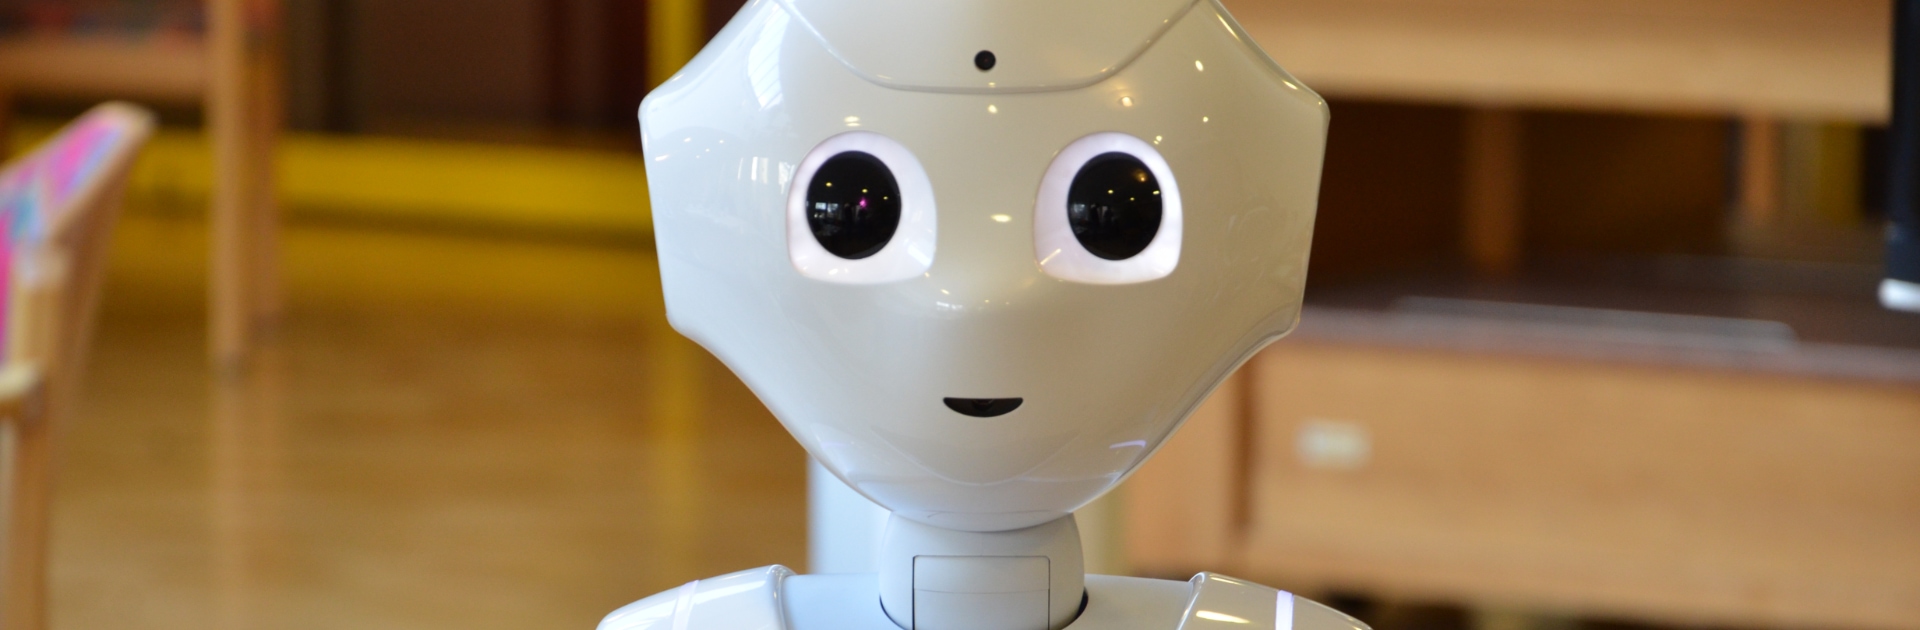 Roboter Pepper hat menschliche Gesichtszüge und Körperform